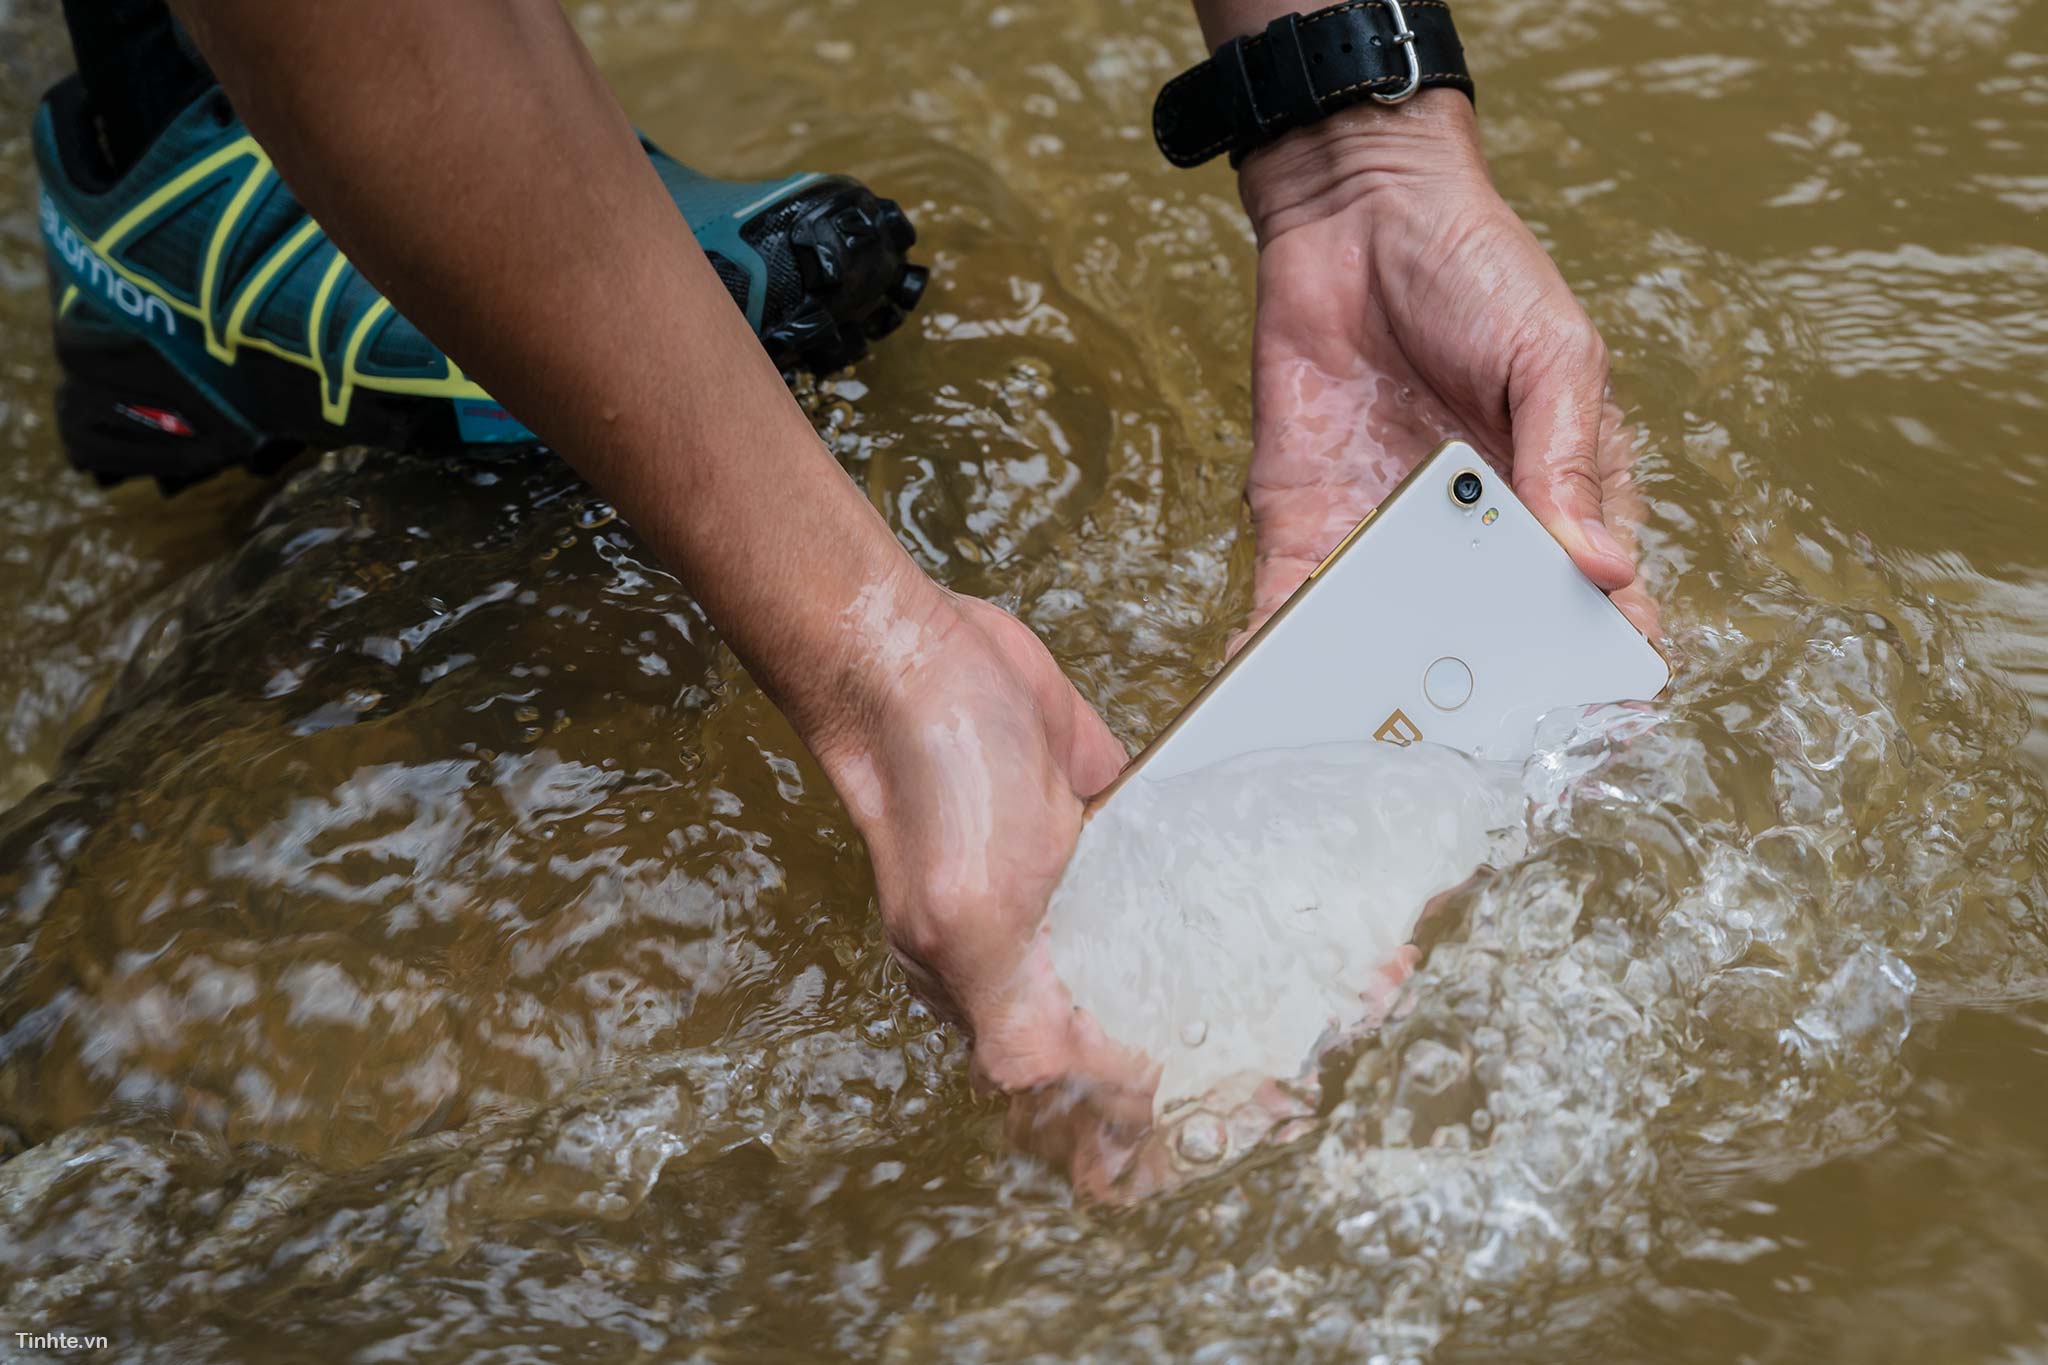 Cách người ta test smartphone đạt chuẩn kháng nước, và smartphone kháng nước không bền như bạn nghĩ